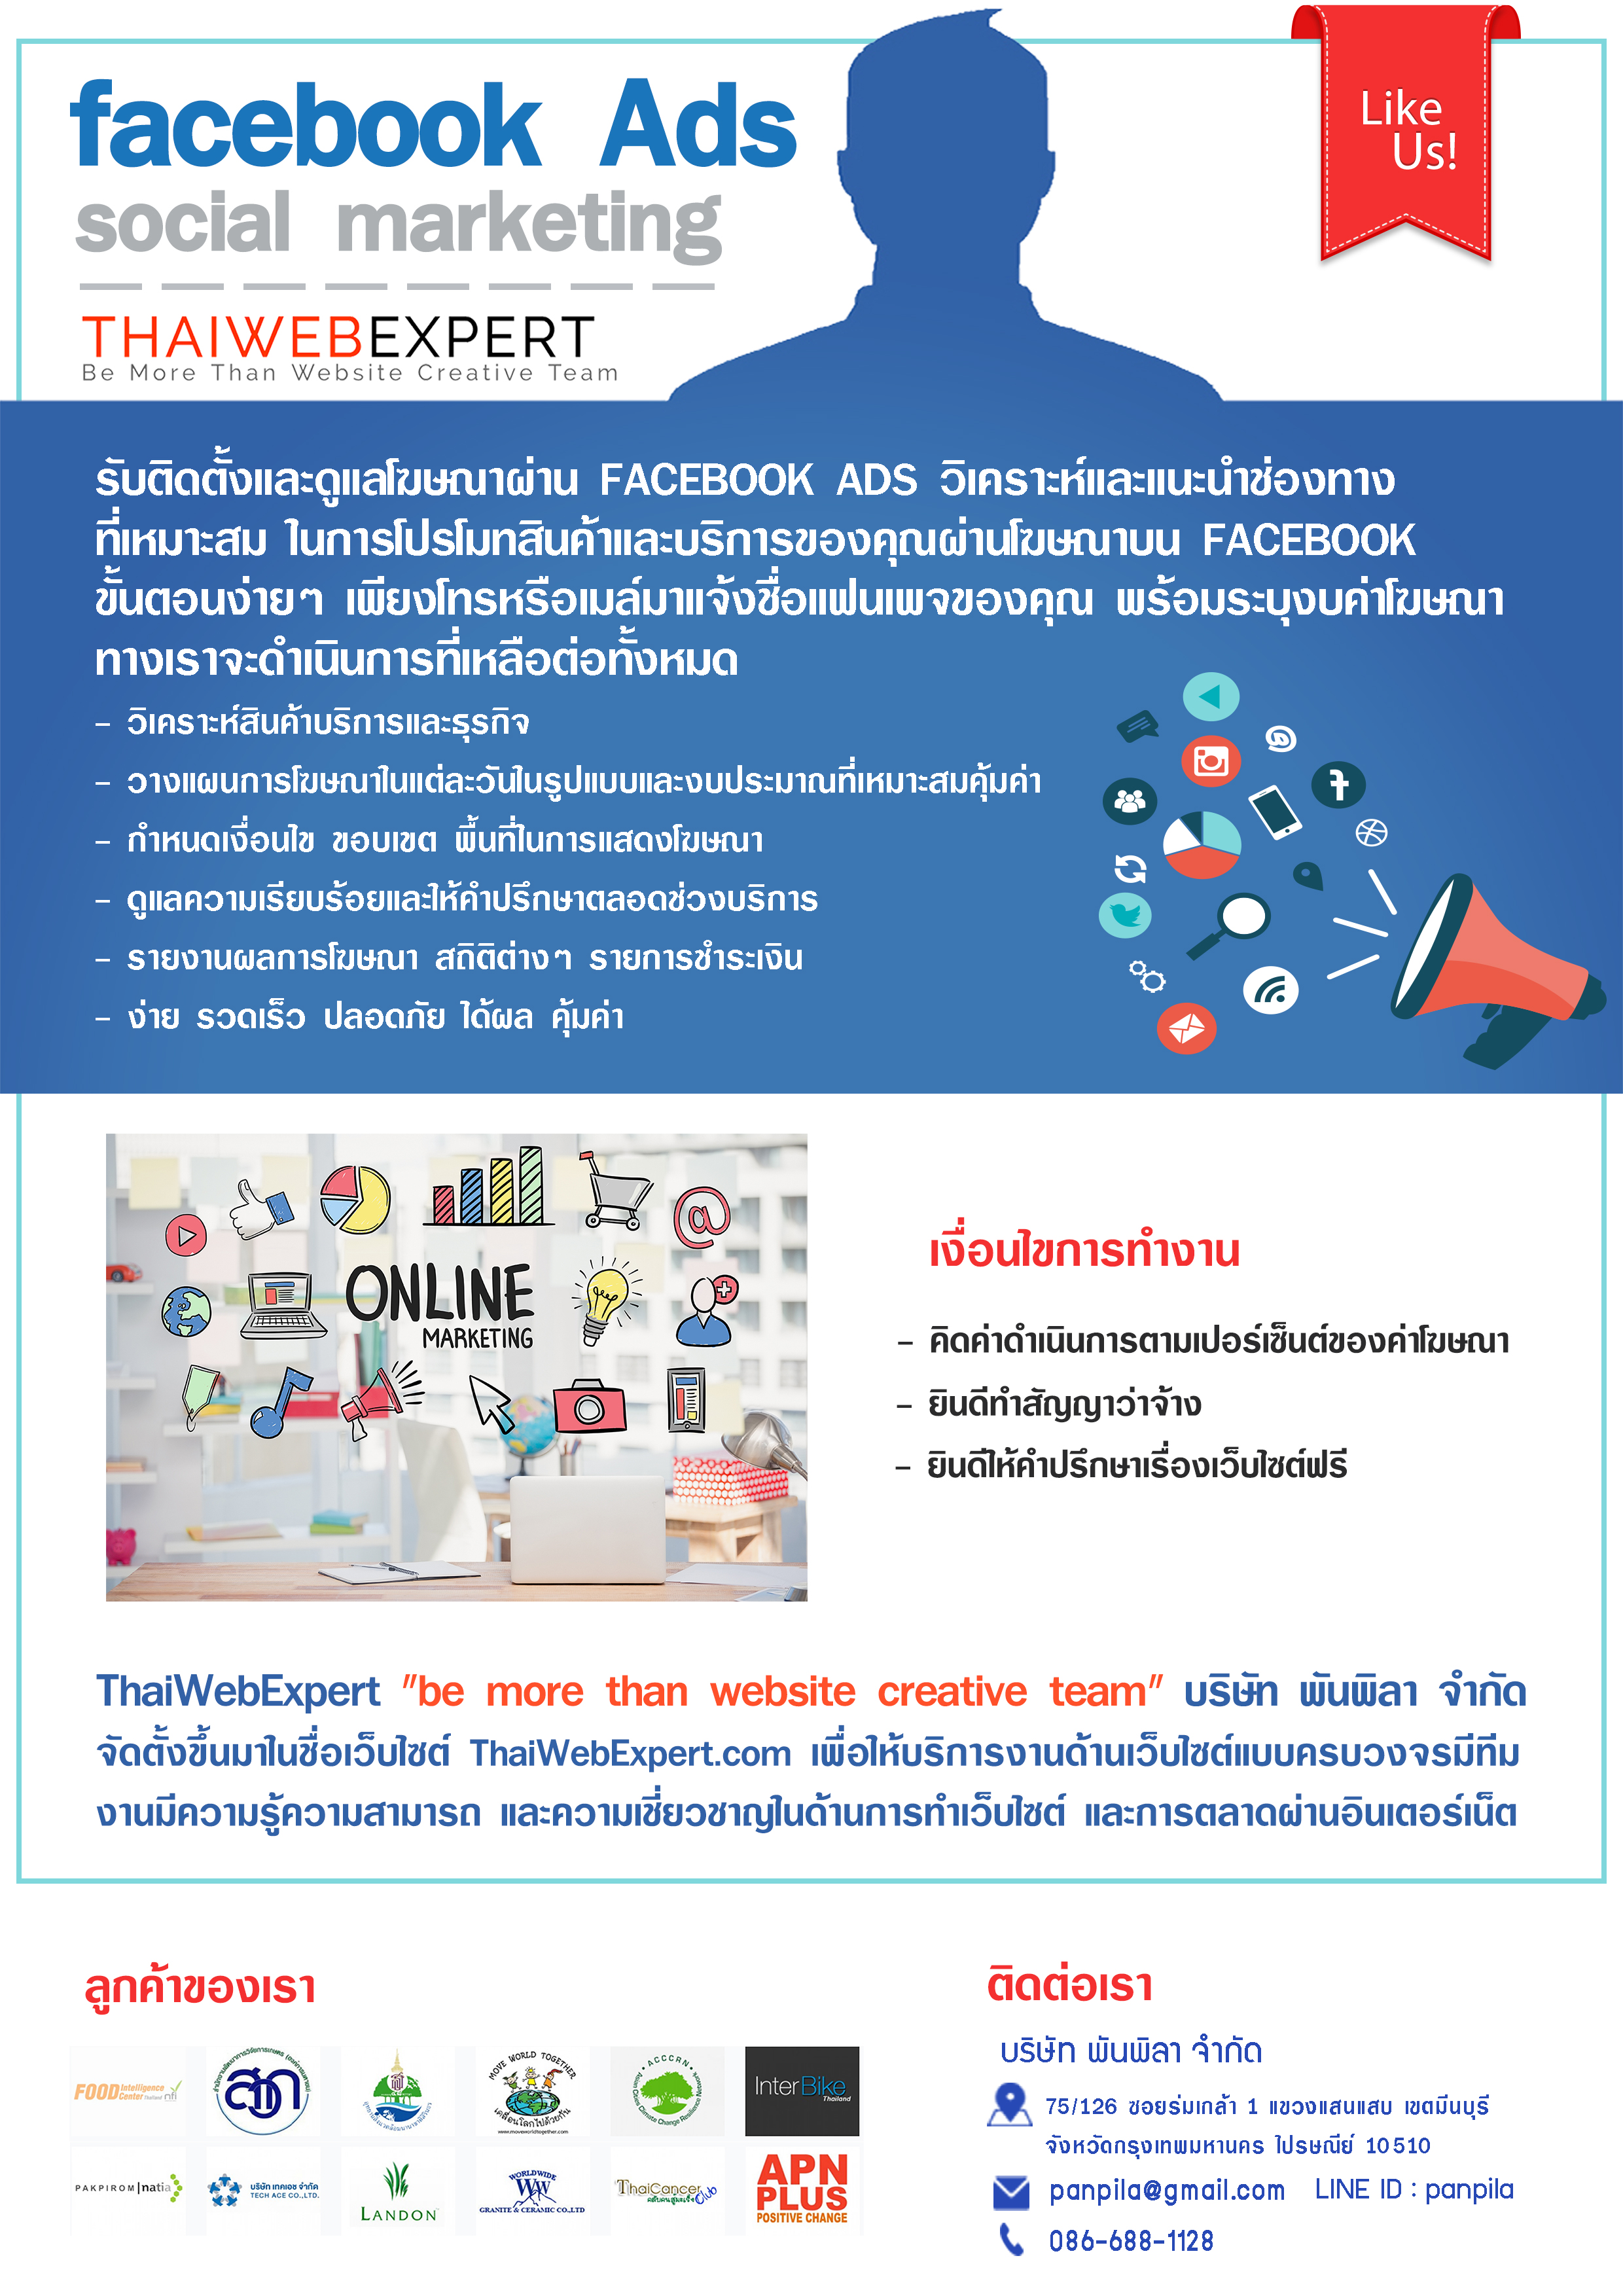 รับติดตั้งและดูแลโฆษณาผ่าน FACEBOOK ADS ในการโปรโมทสินค้าและบริการของคุณผ่านโฆษณาบน FACEBOOK (โดย ThaiWebExpert) รูปที่ 1